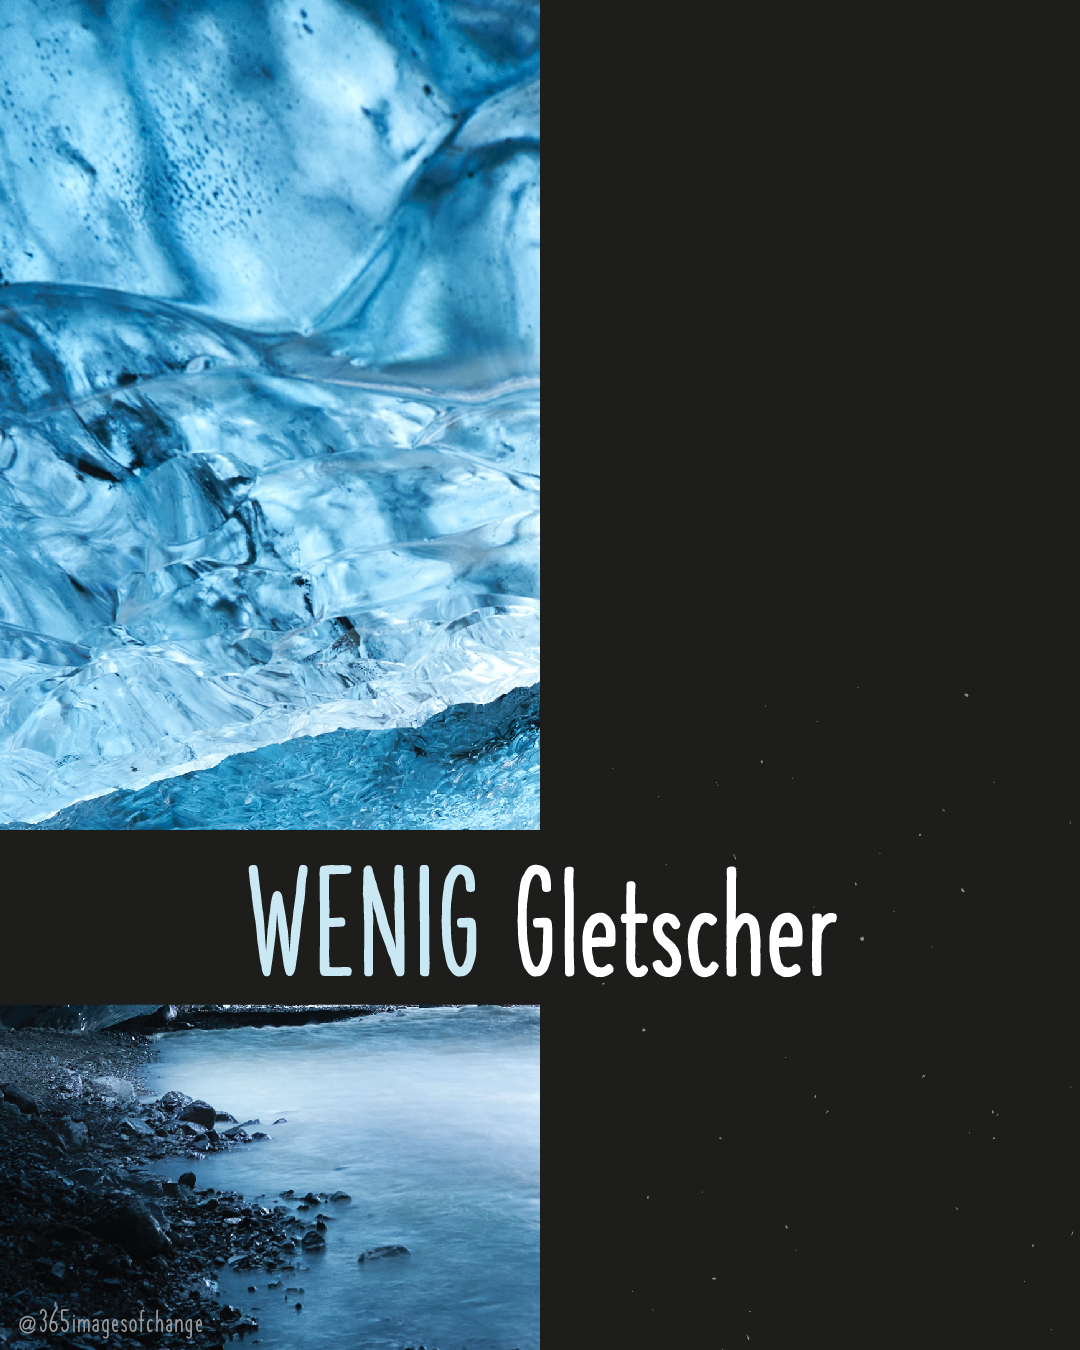 Abgeschnittenes Bild von Gletschereis. Text darunter: Wenig Gletscher